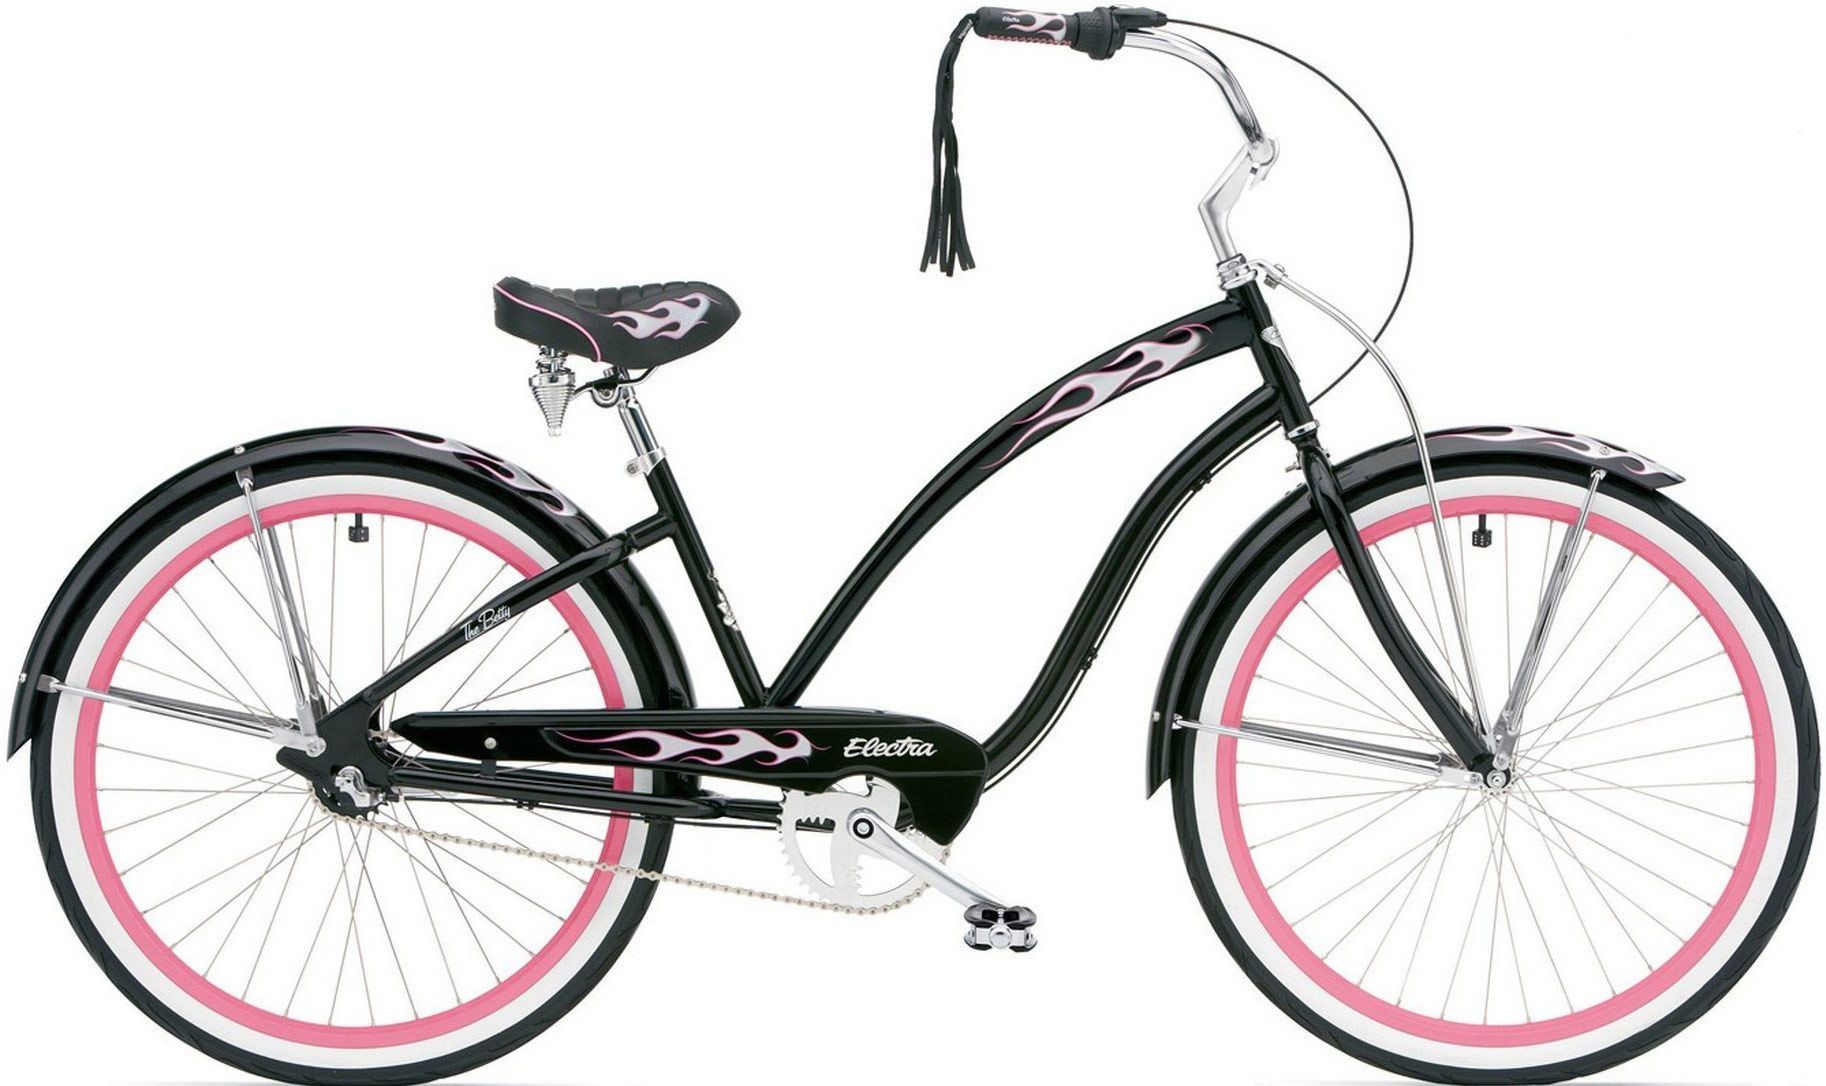  Велосипед Electra Black Betty 3i Ladies 2017